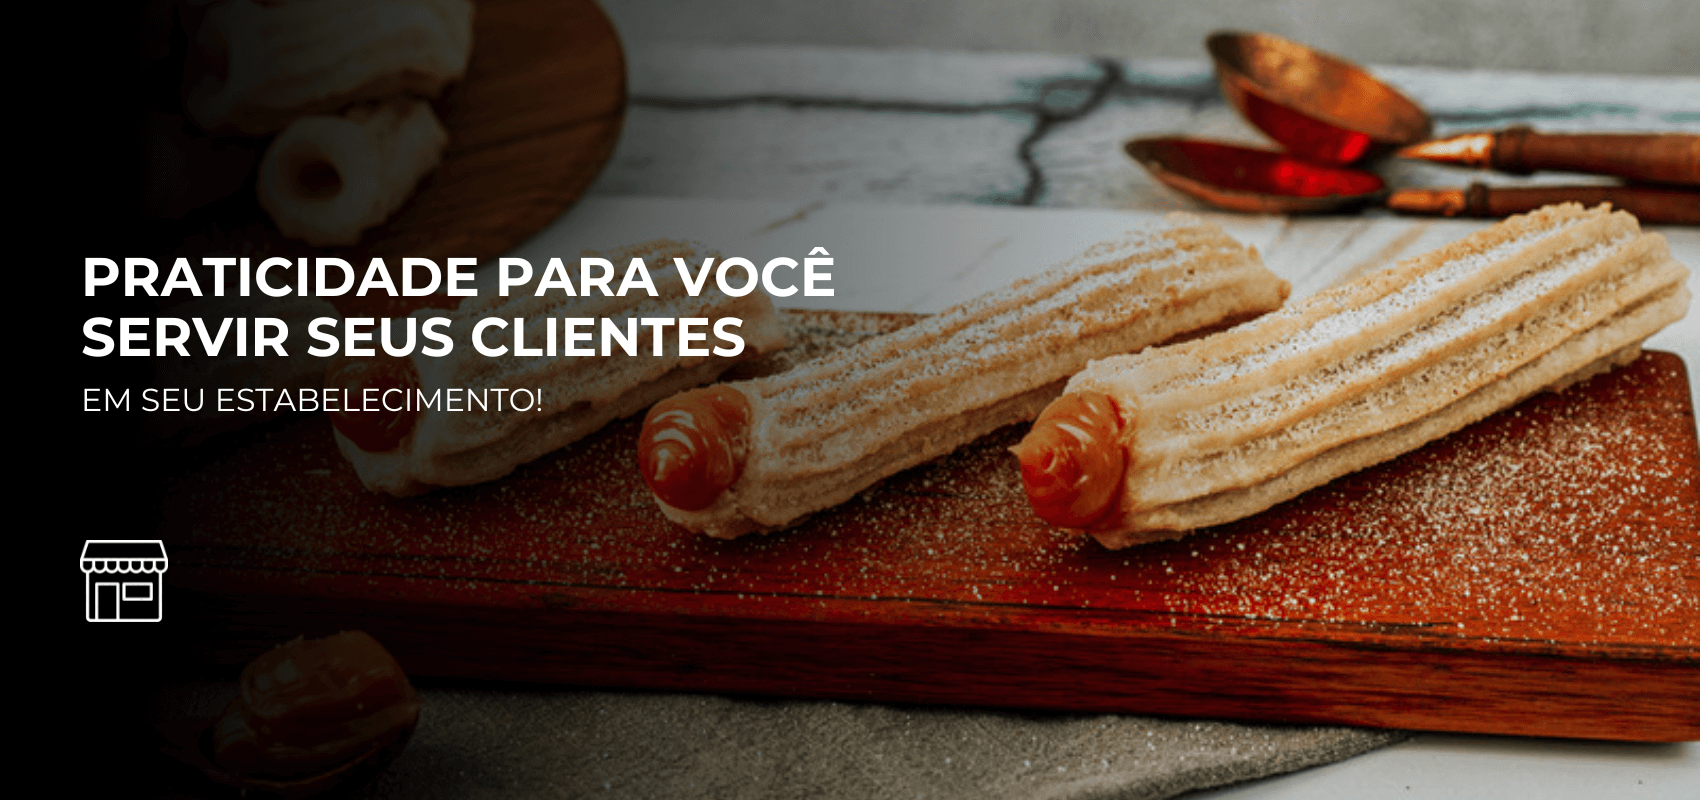 O melhor churros congelado de São Paulo